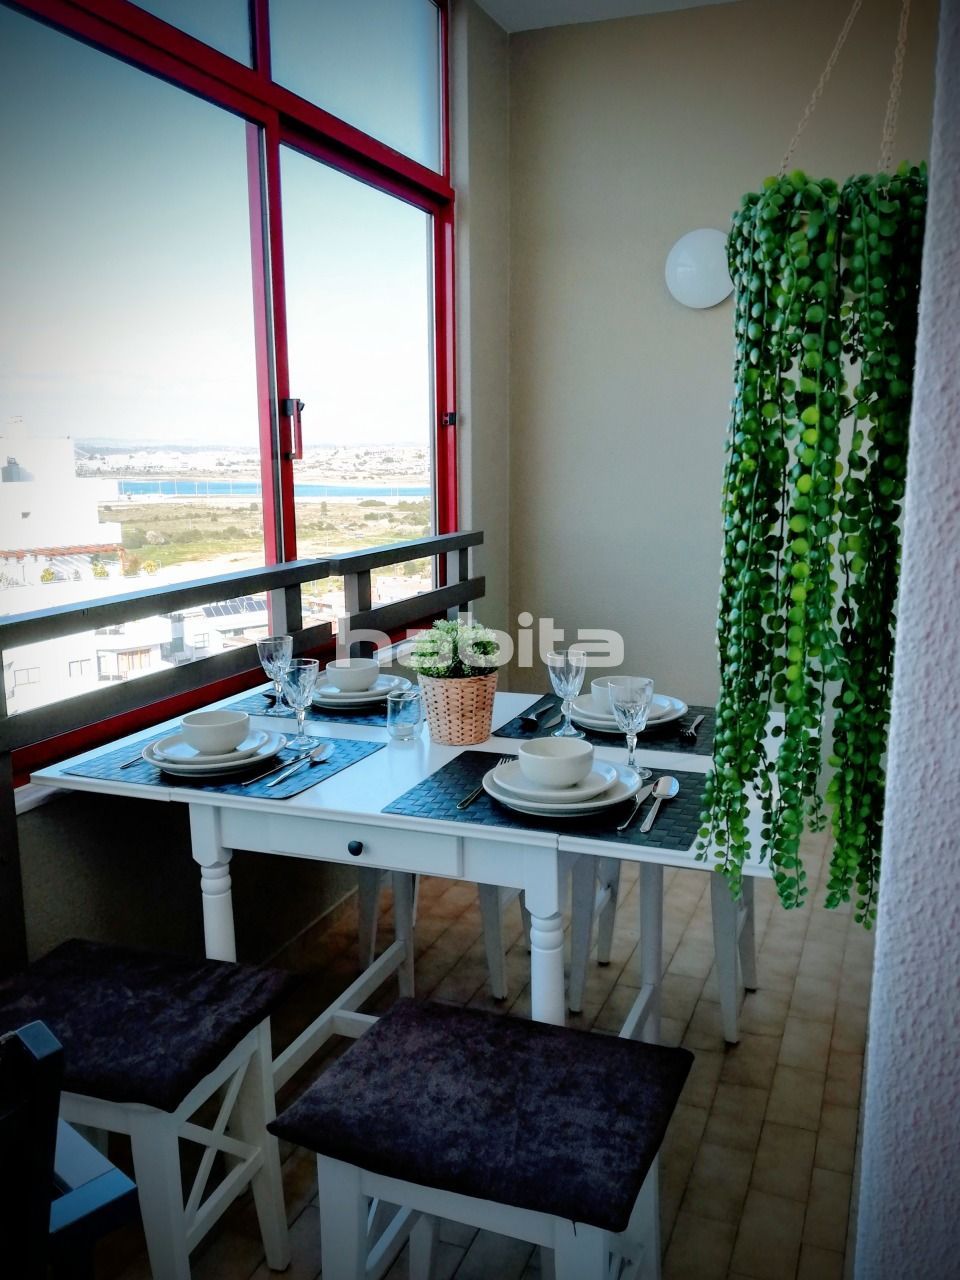 Apartment in Portimao, Portugal, 50 sq.m - picture 1